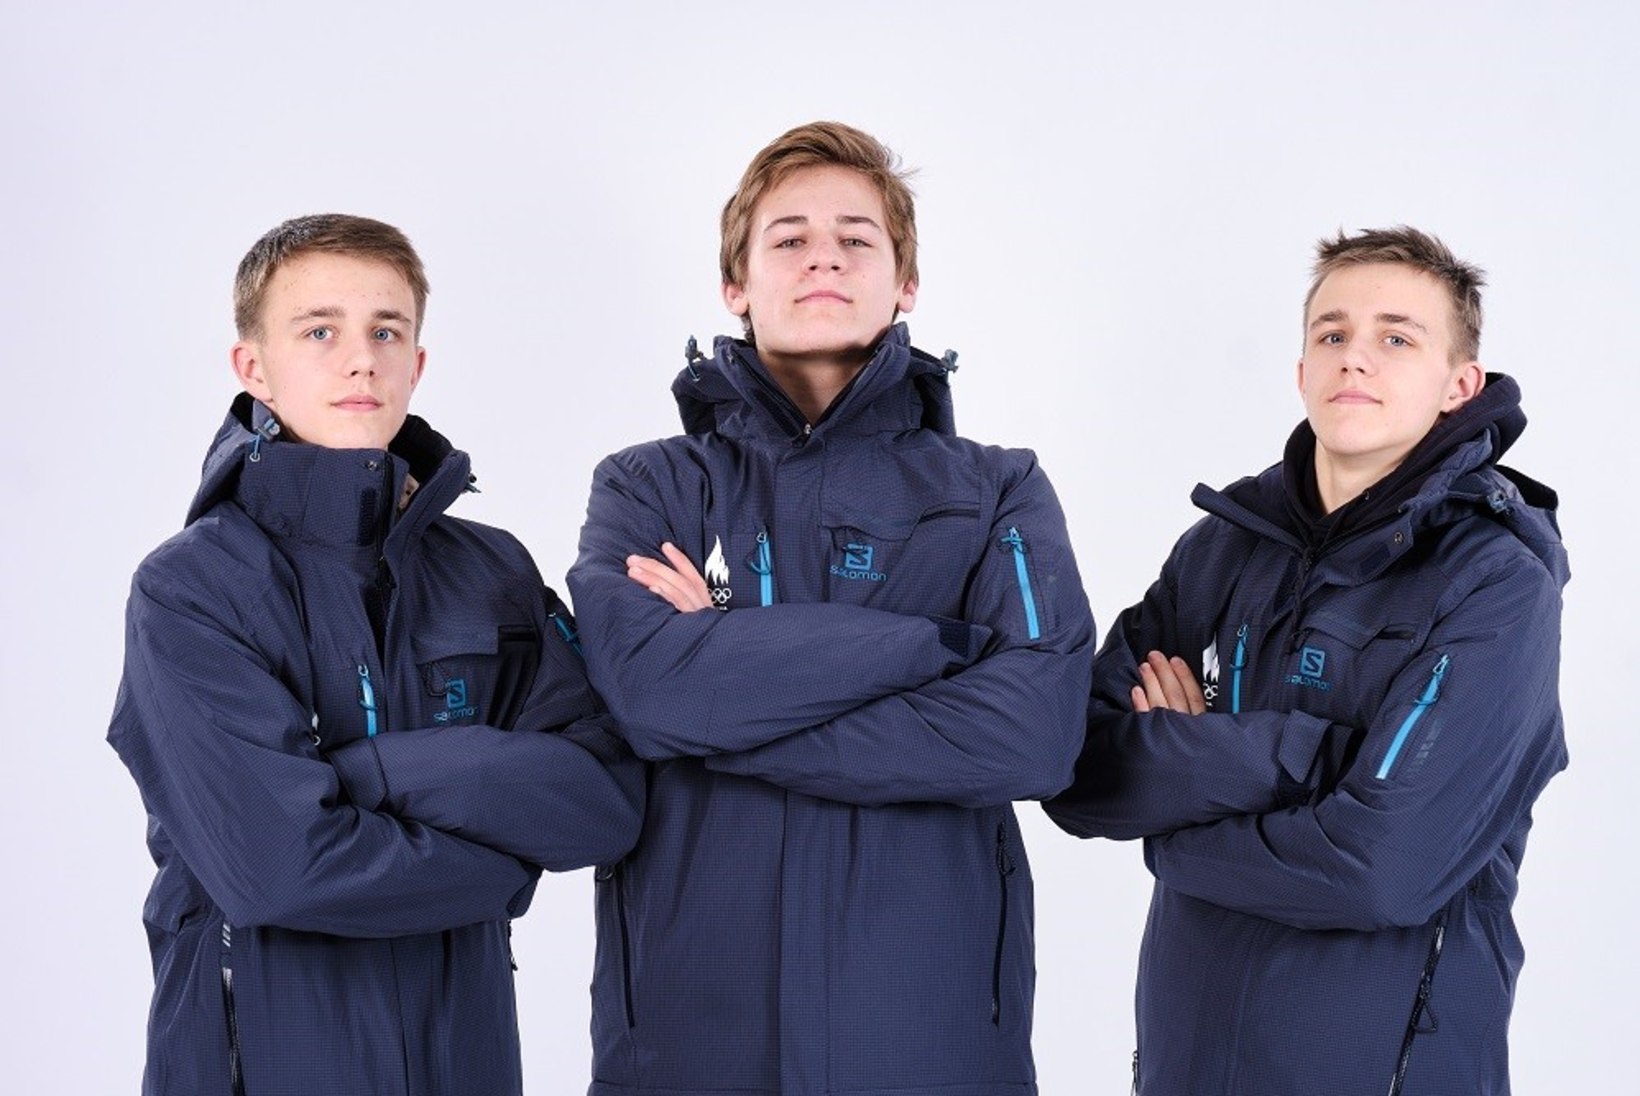 Noorte olümpia avapäev: Eesti kaksikud tegid ajalugu, aga lähevad peagi juba vastamisi